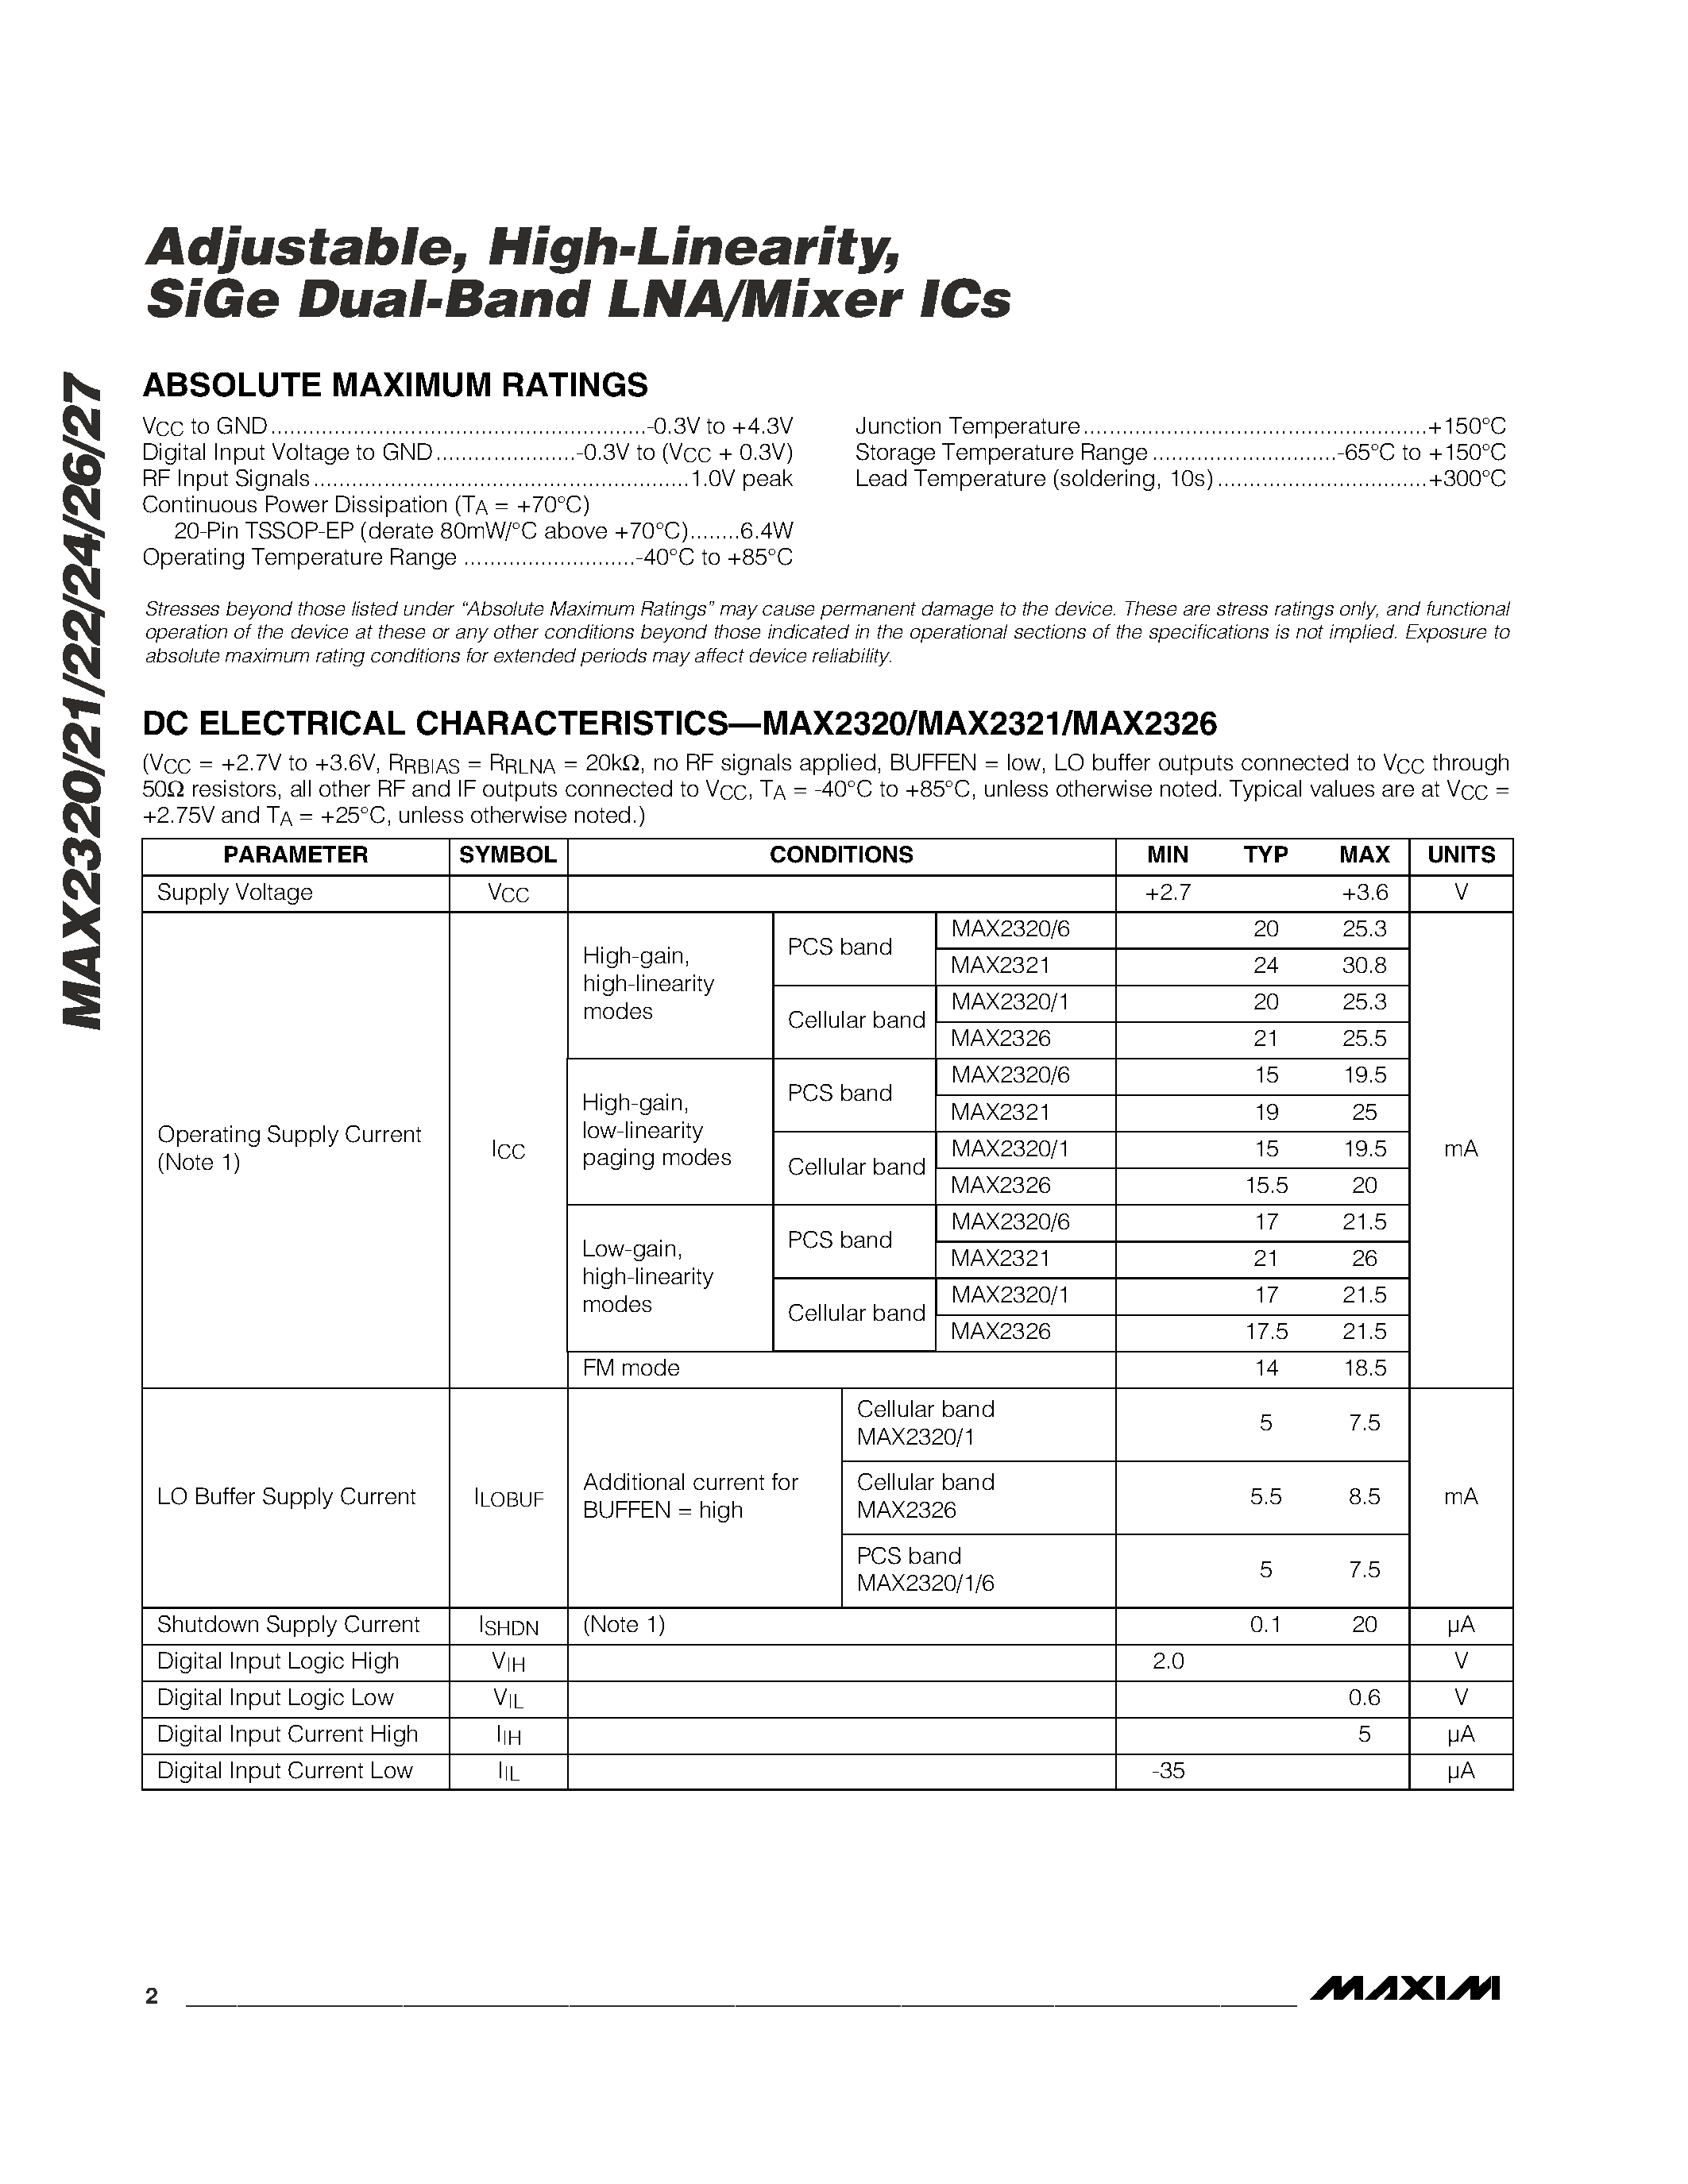 Даташит MAX2325 - Adjustable / High-Linearity / SiGe Dual-Band LNA/Mixer ICs страница 2